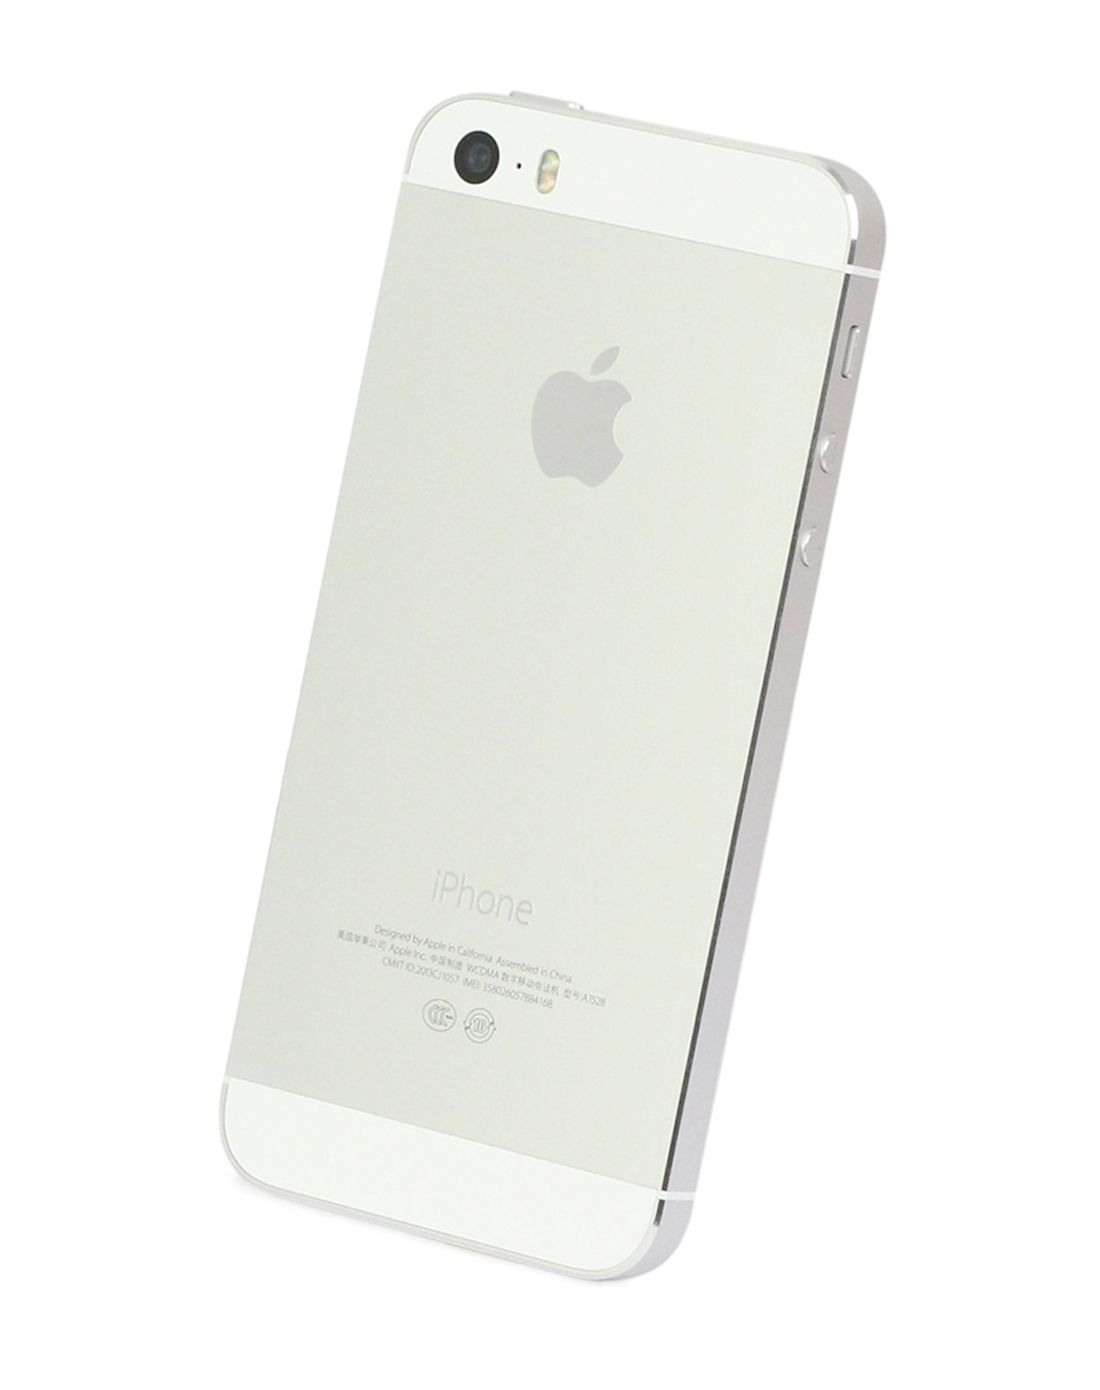 苹果 iphone5s 16g 银色 双4g